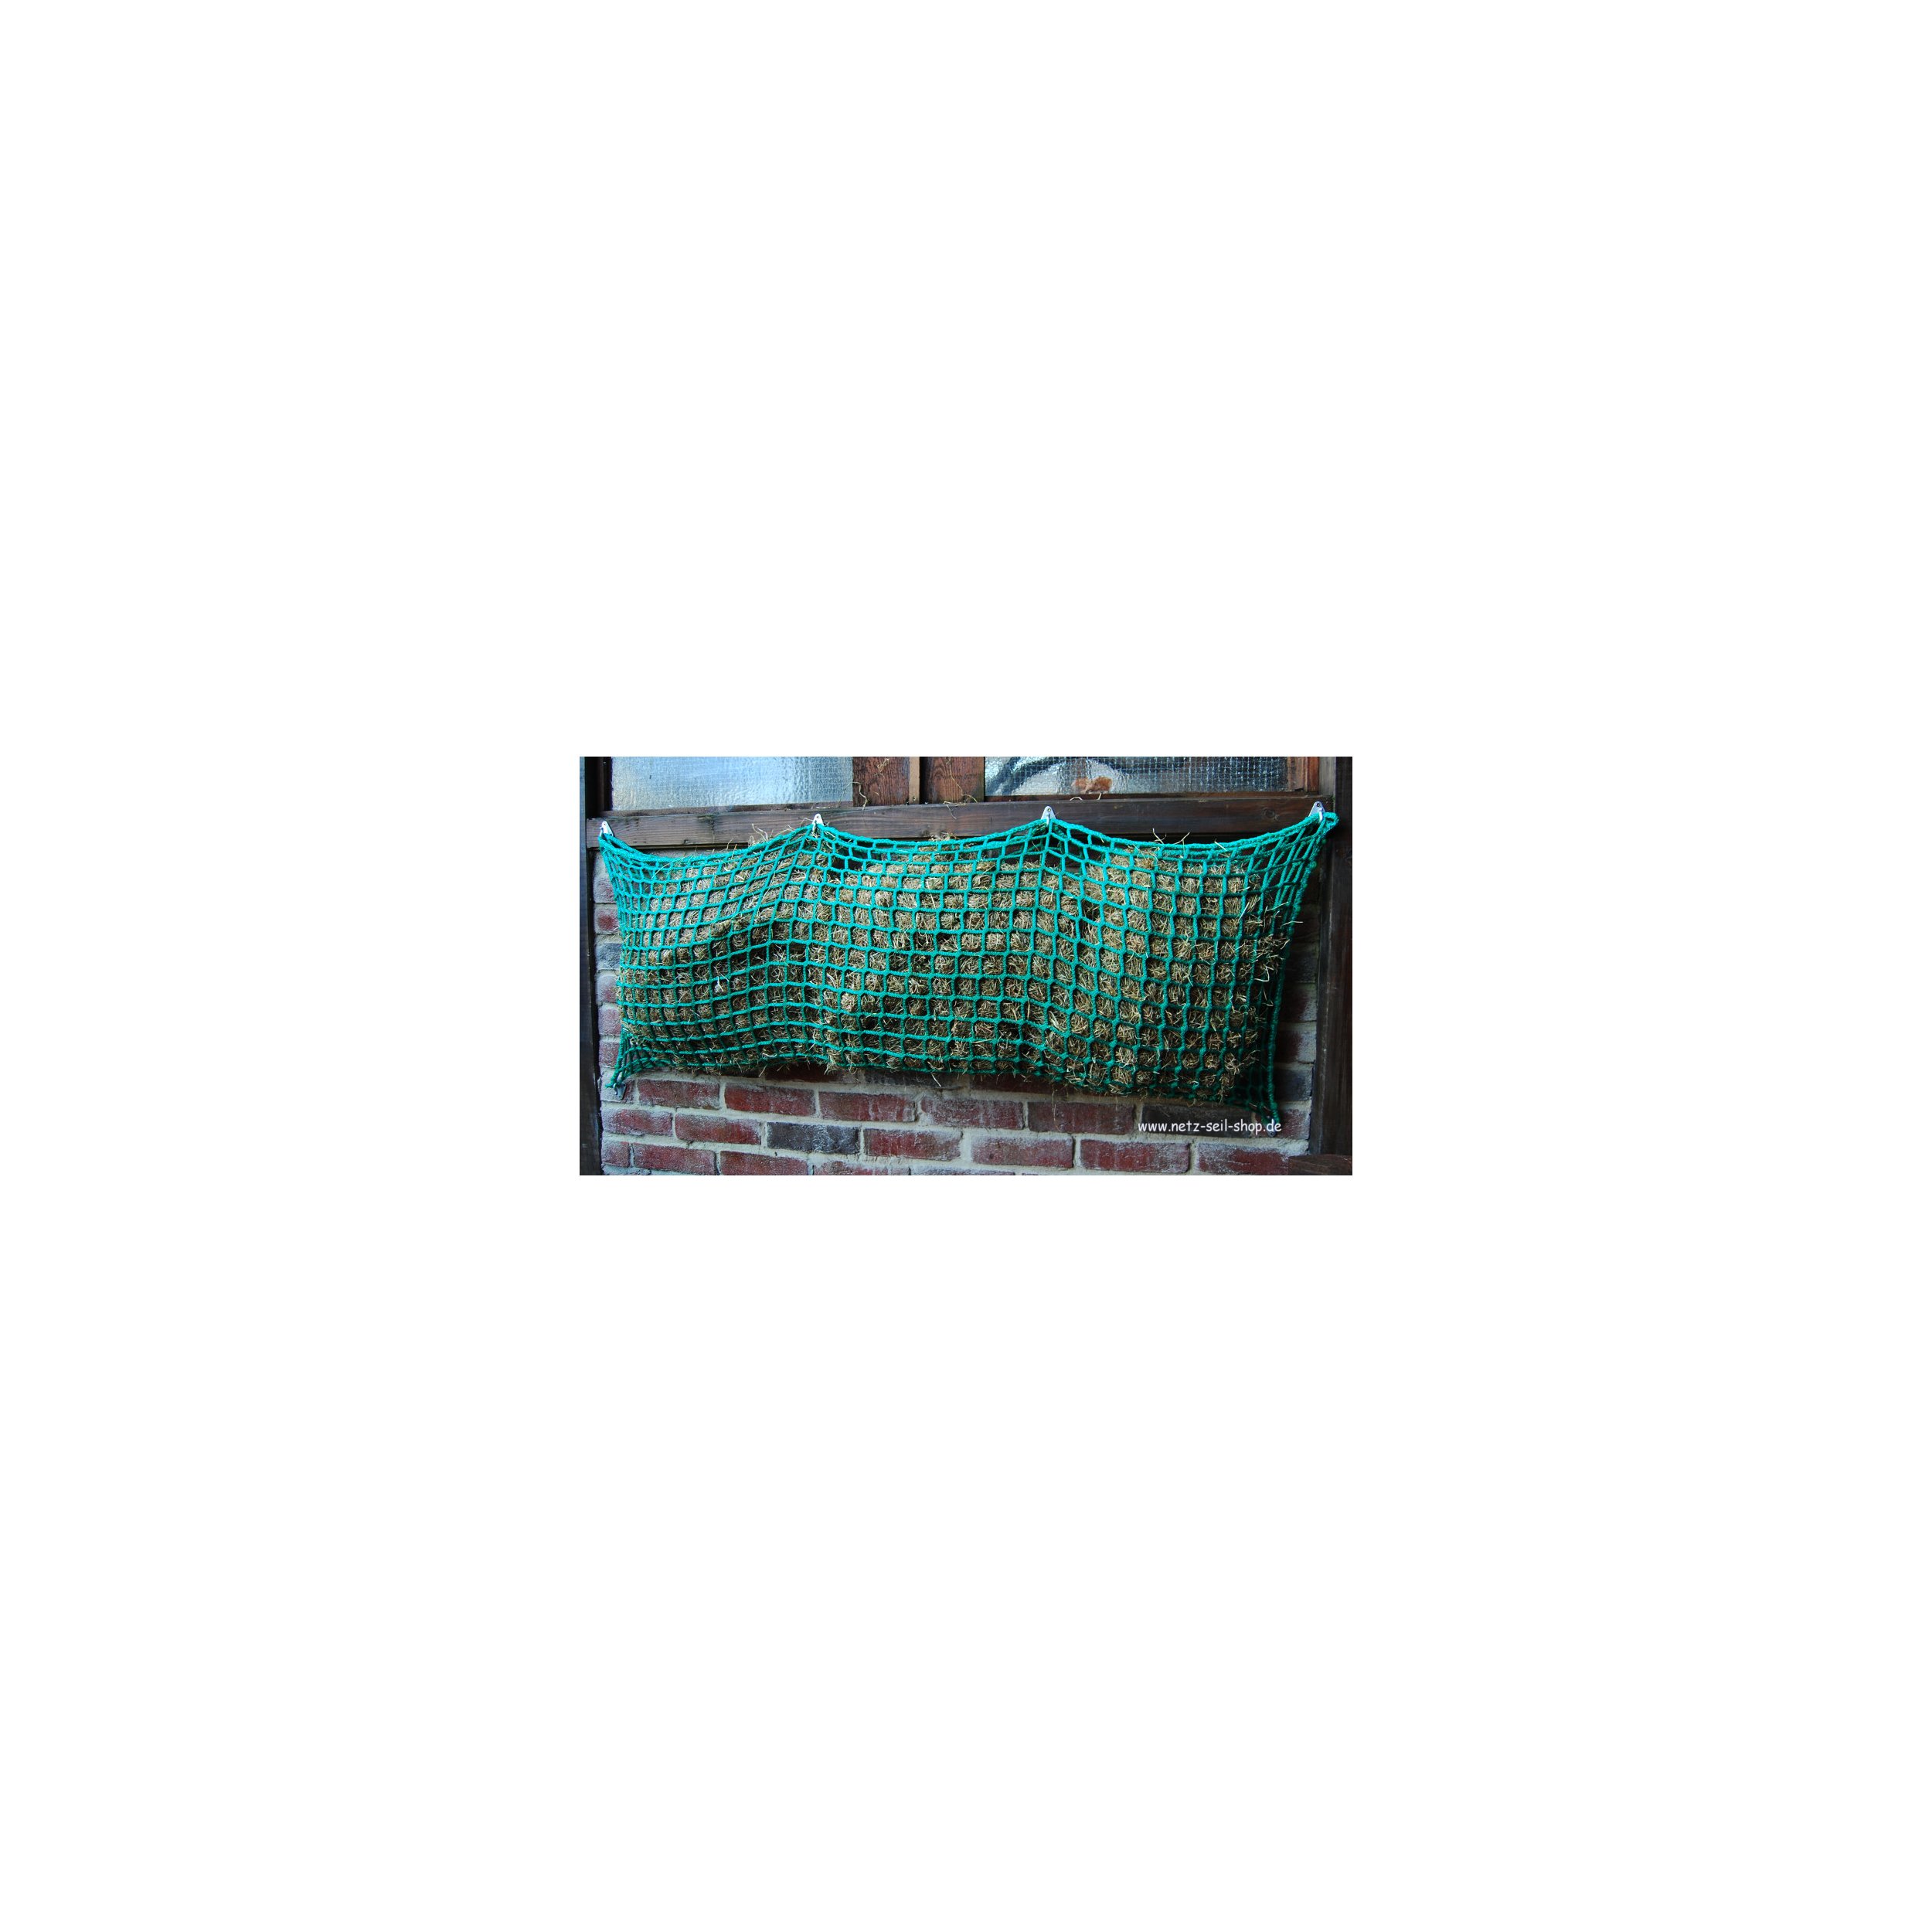 Hooi net in zakvorm, 1,60 m breed, hoogte 0,80 m Ø 5 mm garen dikte, # 45 mm maas